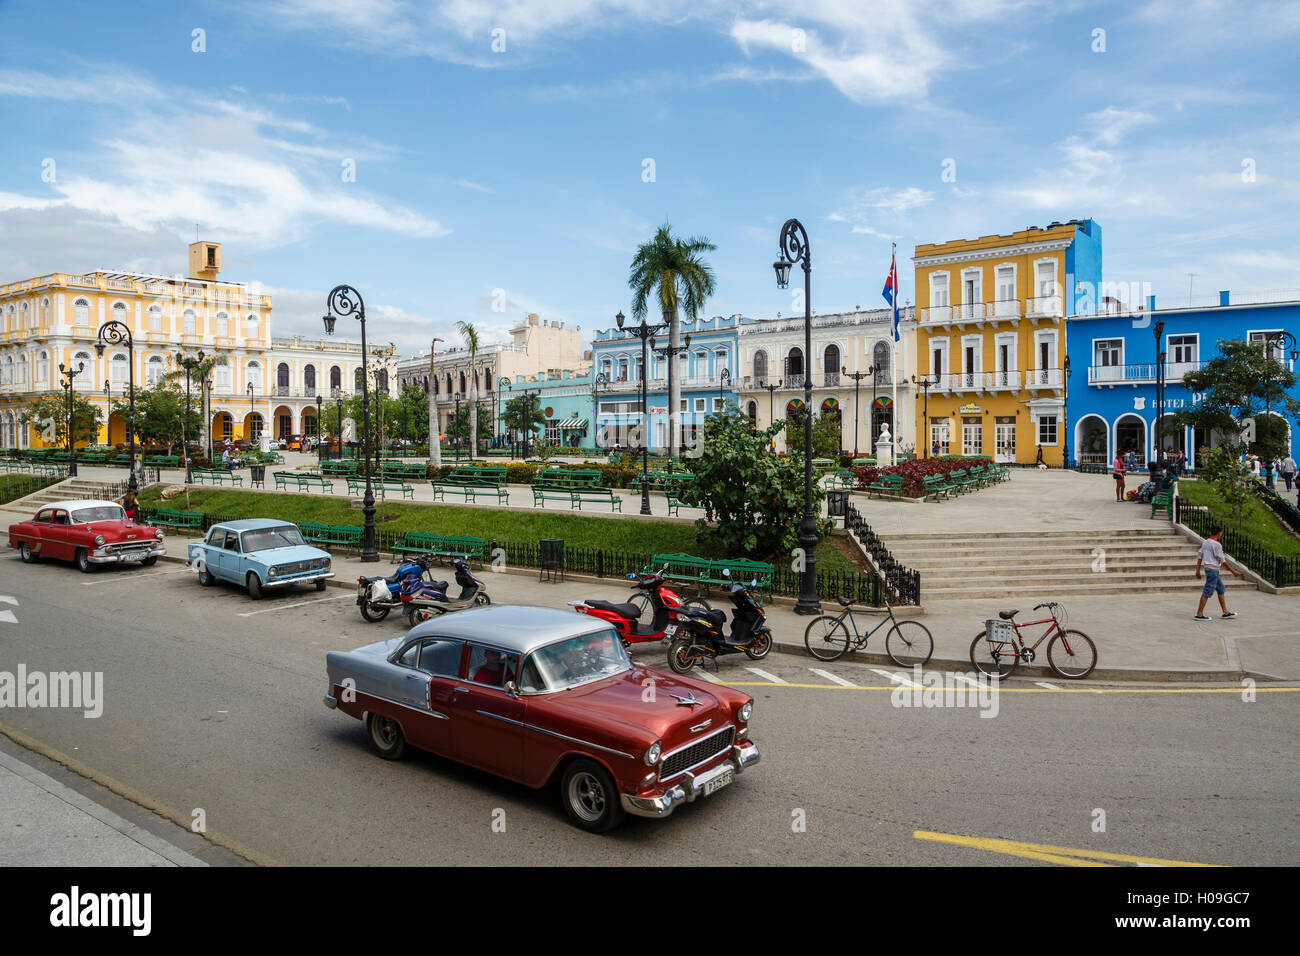 Parque Serafin Sanchez square, Sancti Spiritus, Cuba, West Indies, Caribbean, Central America Stock Photo